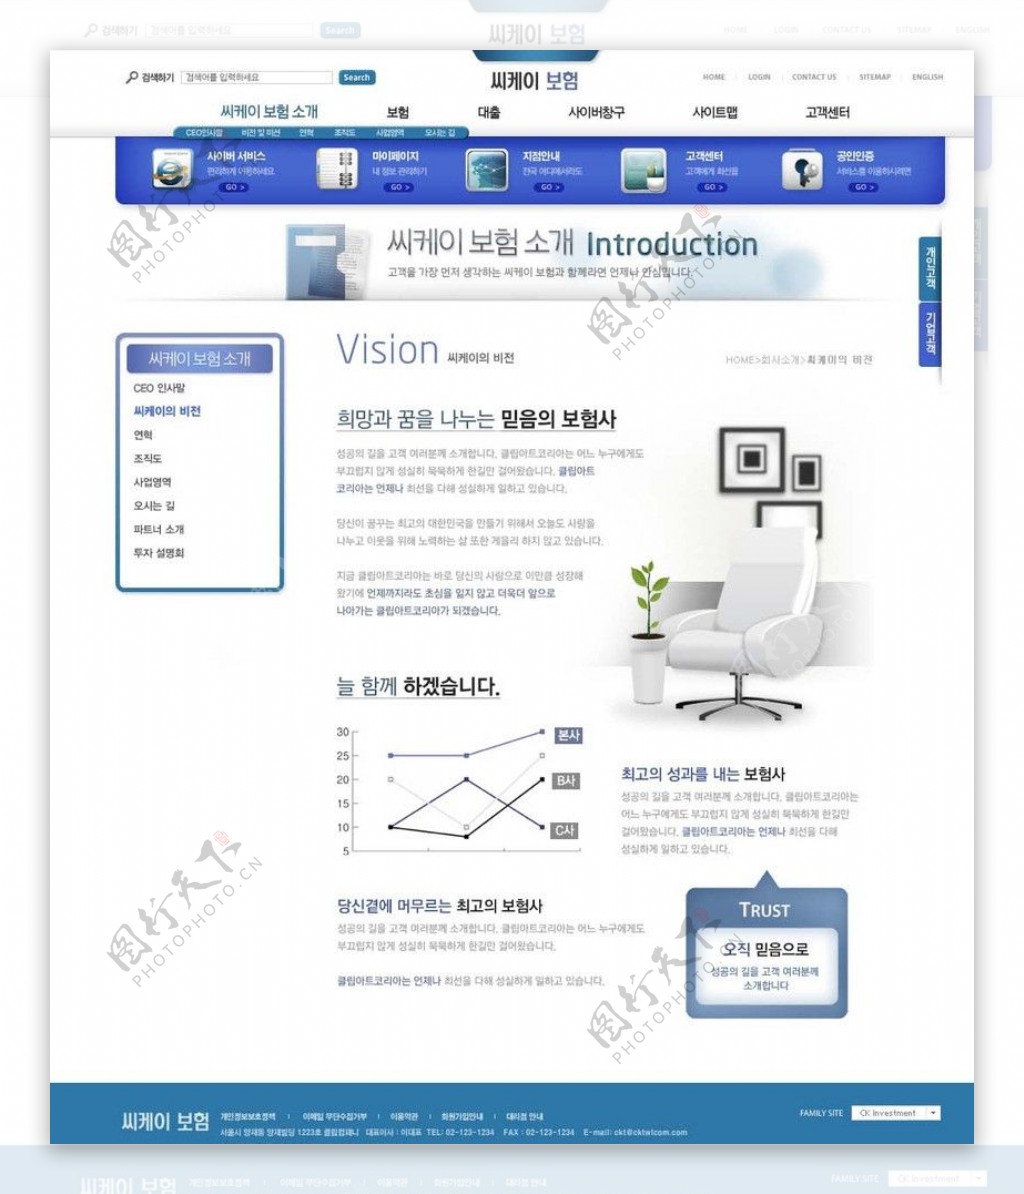 科技网站PSD模板图片